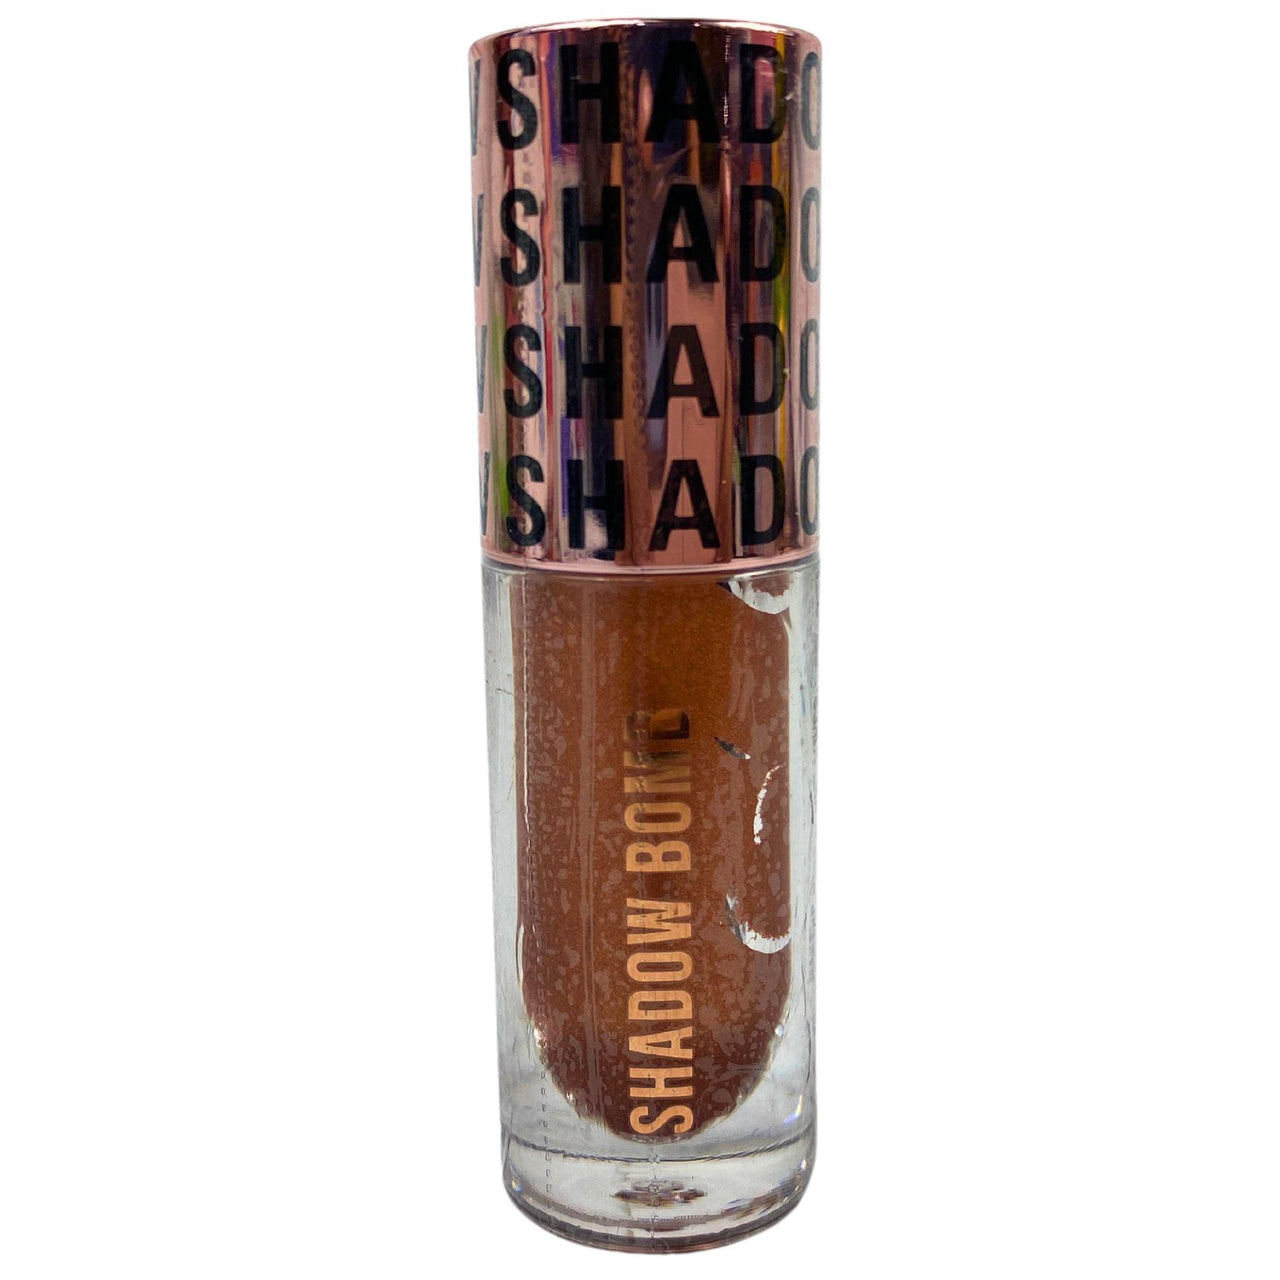 Revolution Shadow Bomb Dream Bronze 0.15OZ (30 Pcs Lot) - Discount Wholesalers Inc